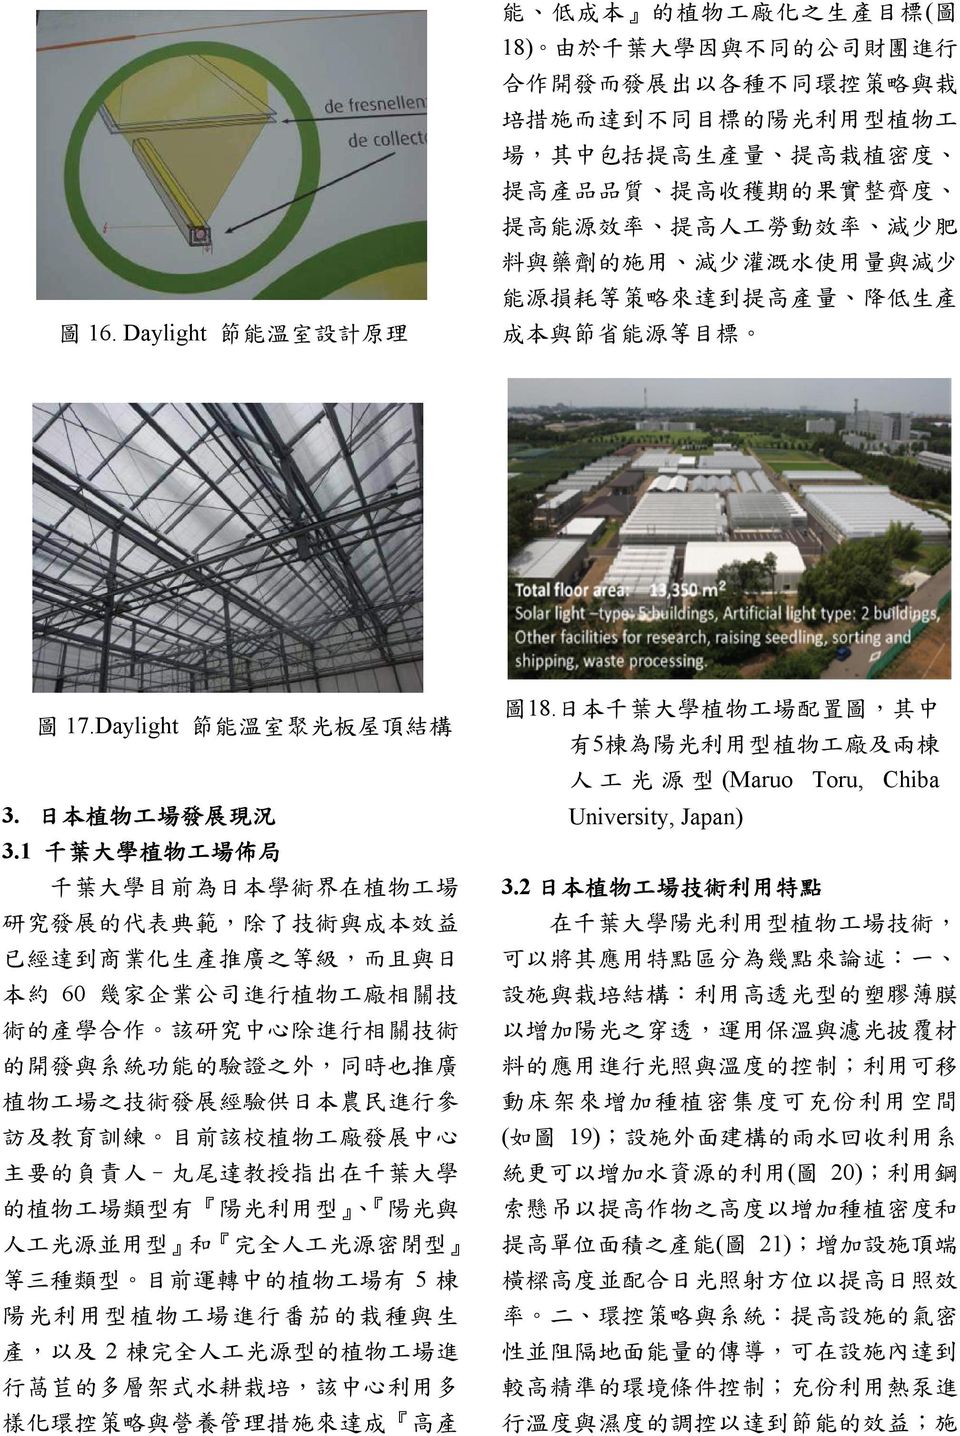 Daylight 節 能 溫 室 聚 光 板 屋 頂 結 構 3. 日 本 植 物 工 場 發 展 現 況 3.